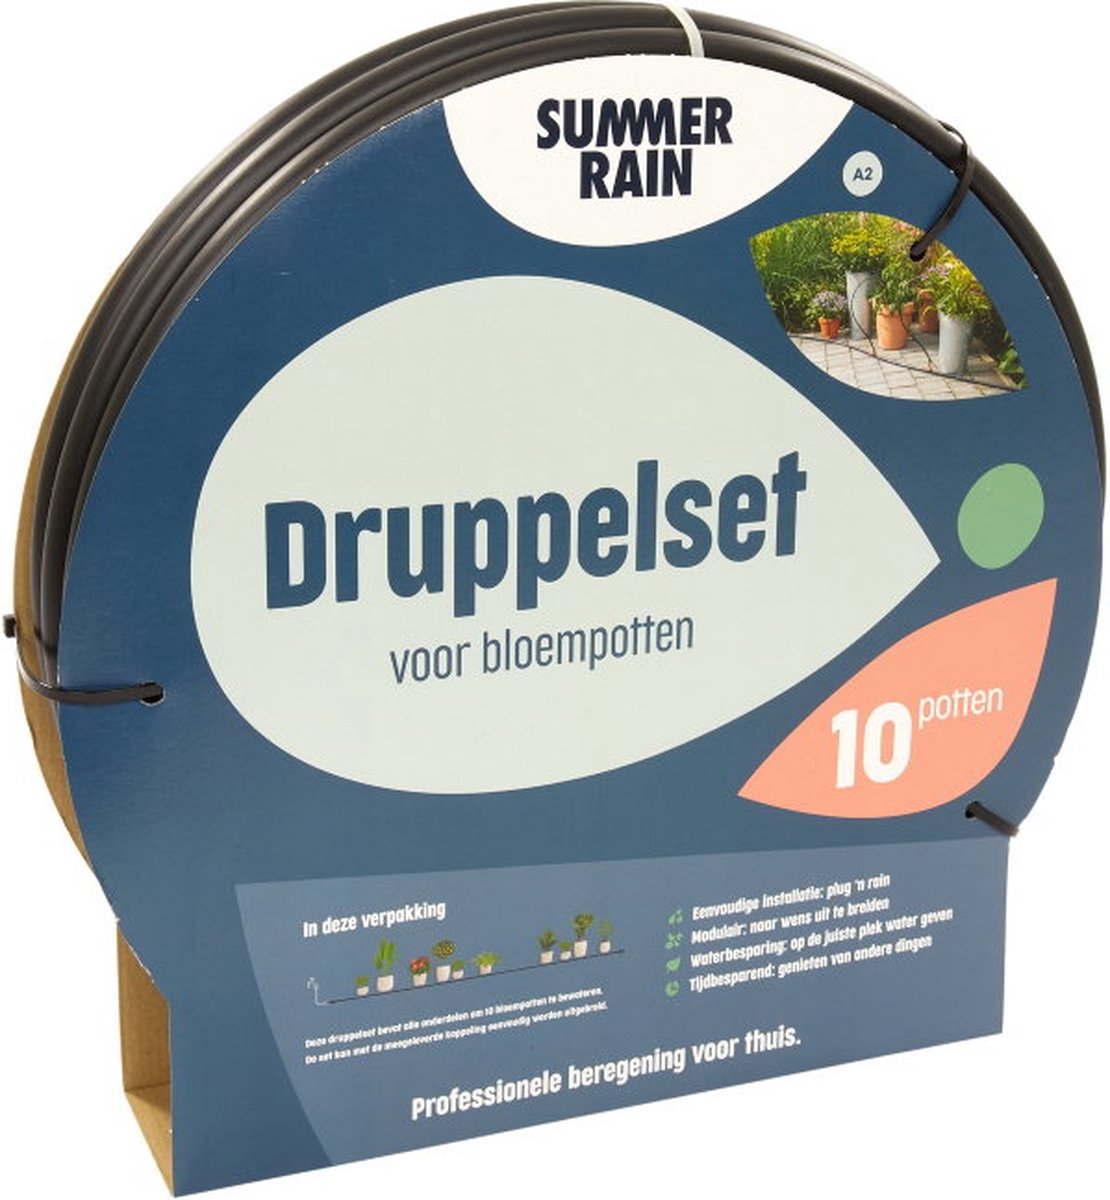 SummerRain druppelsysteem - druppelset voor balkon en terras - geschikt voor 10 bloempotten - professionele beregening voor thuis